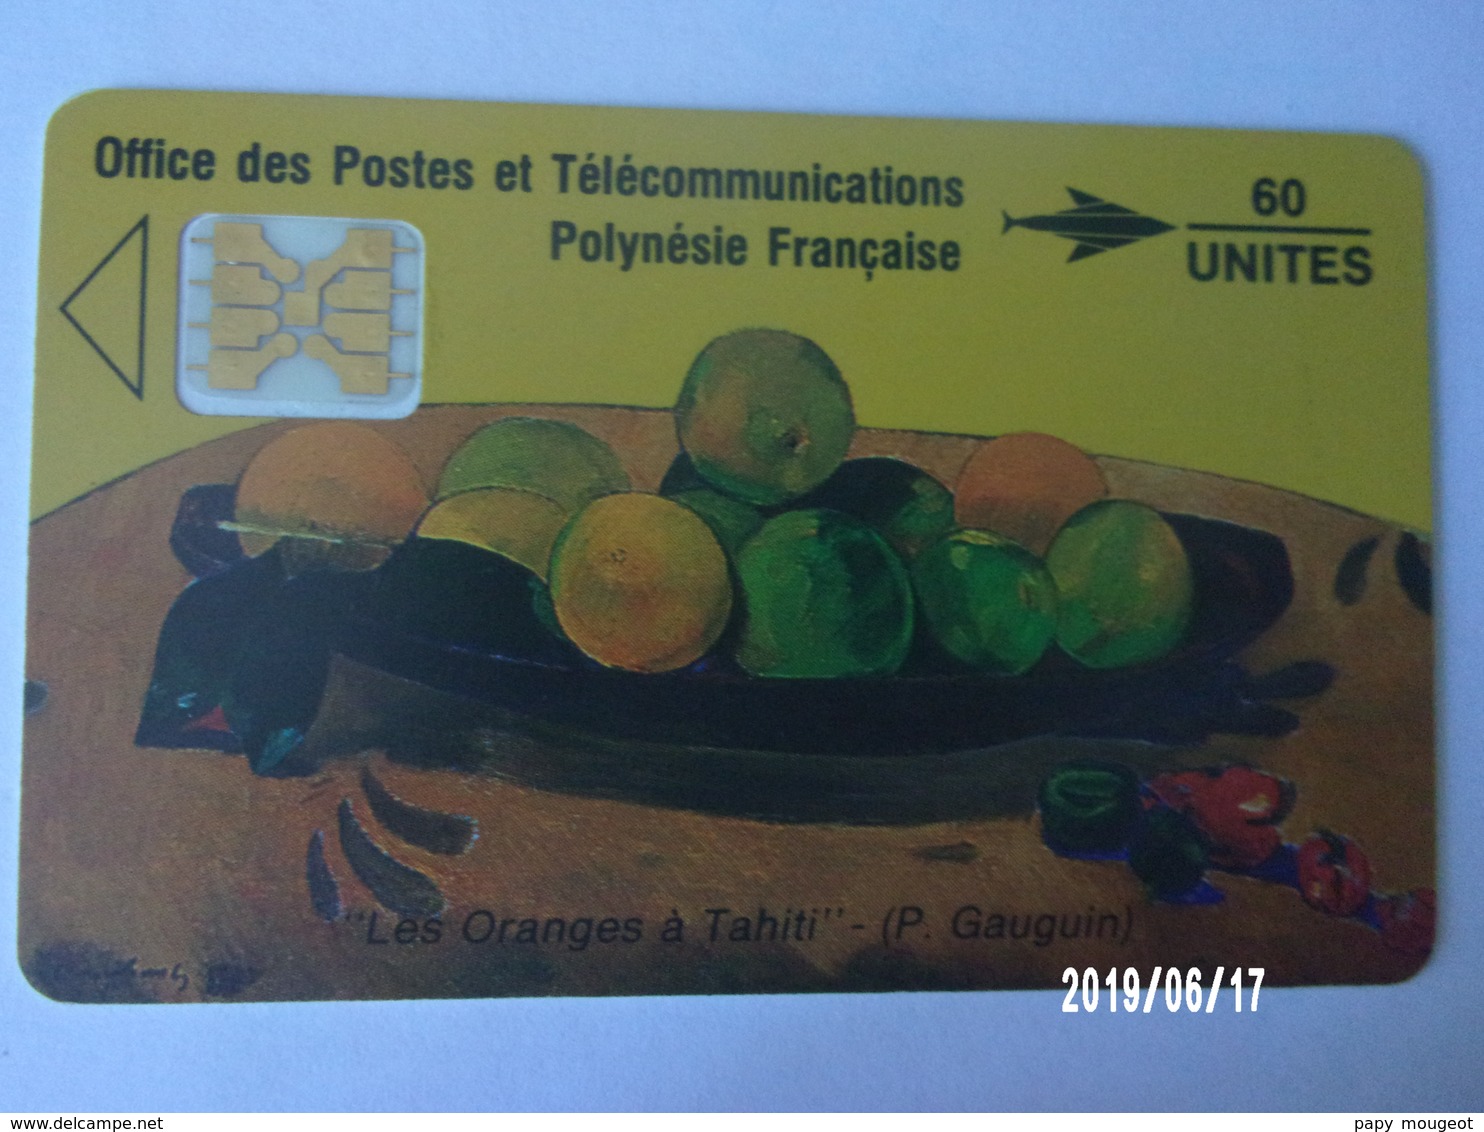 PF5 ? 60U 05/91 "Les Oranges à Tahiti" (P. Gauguin) - Polynésie Française